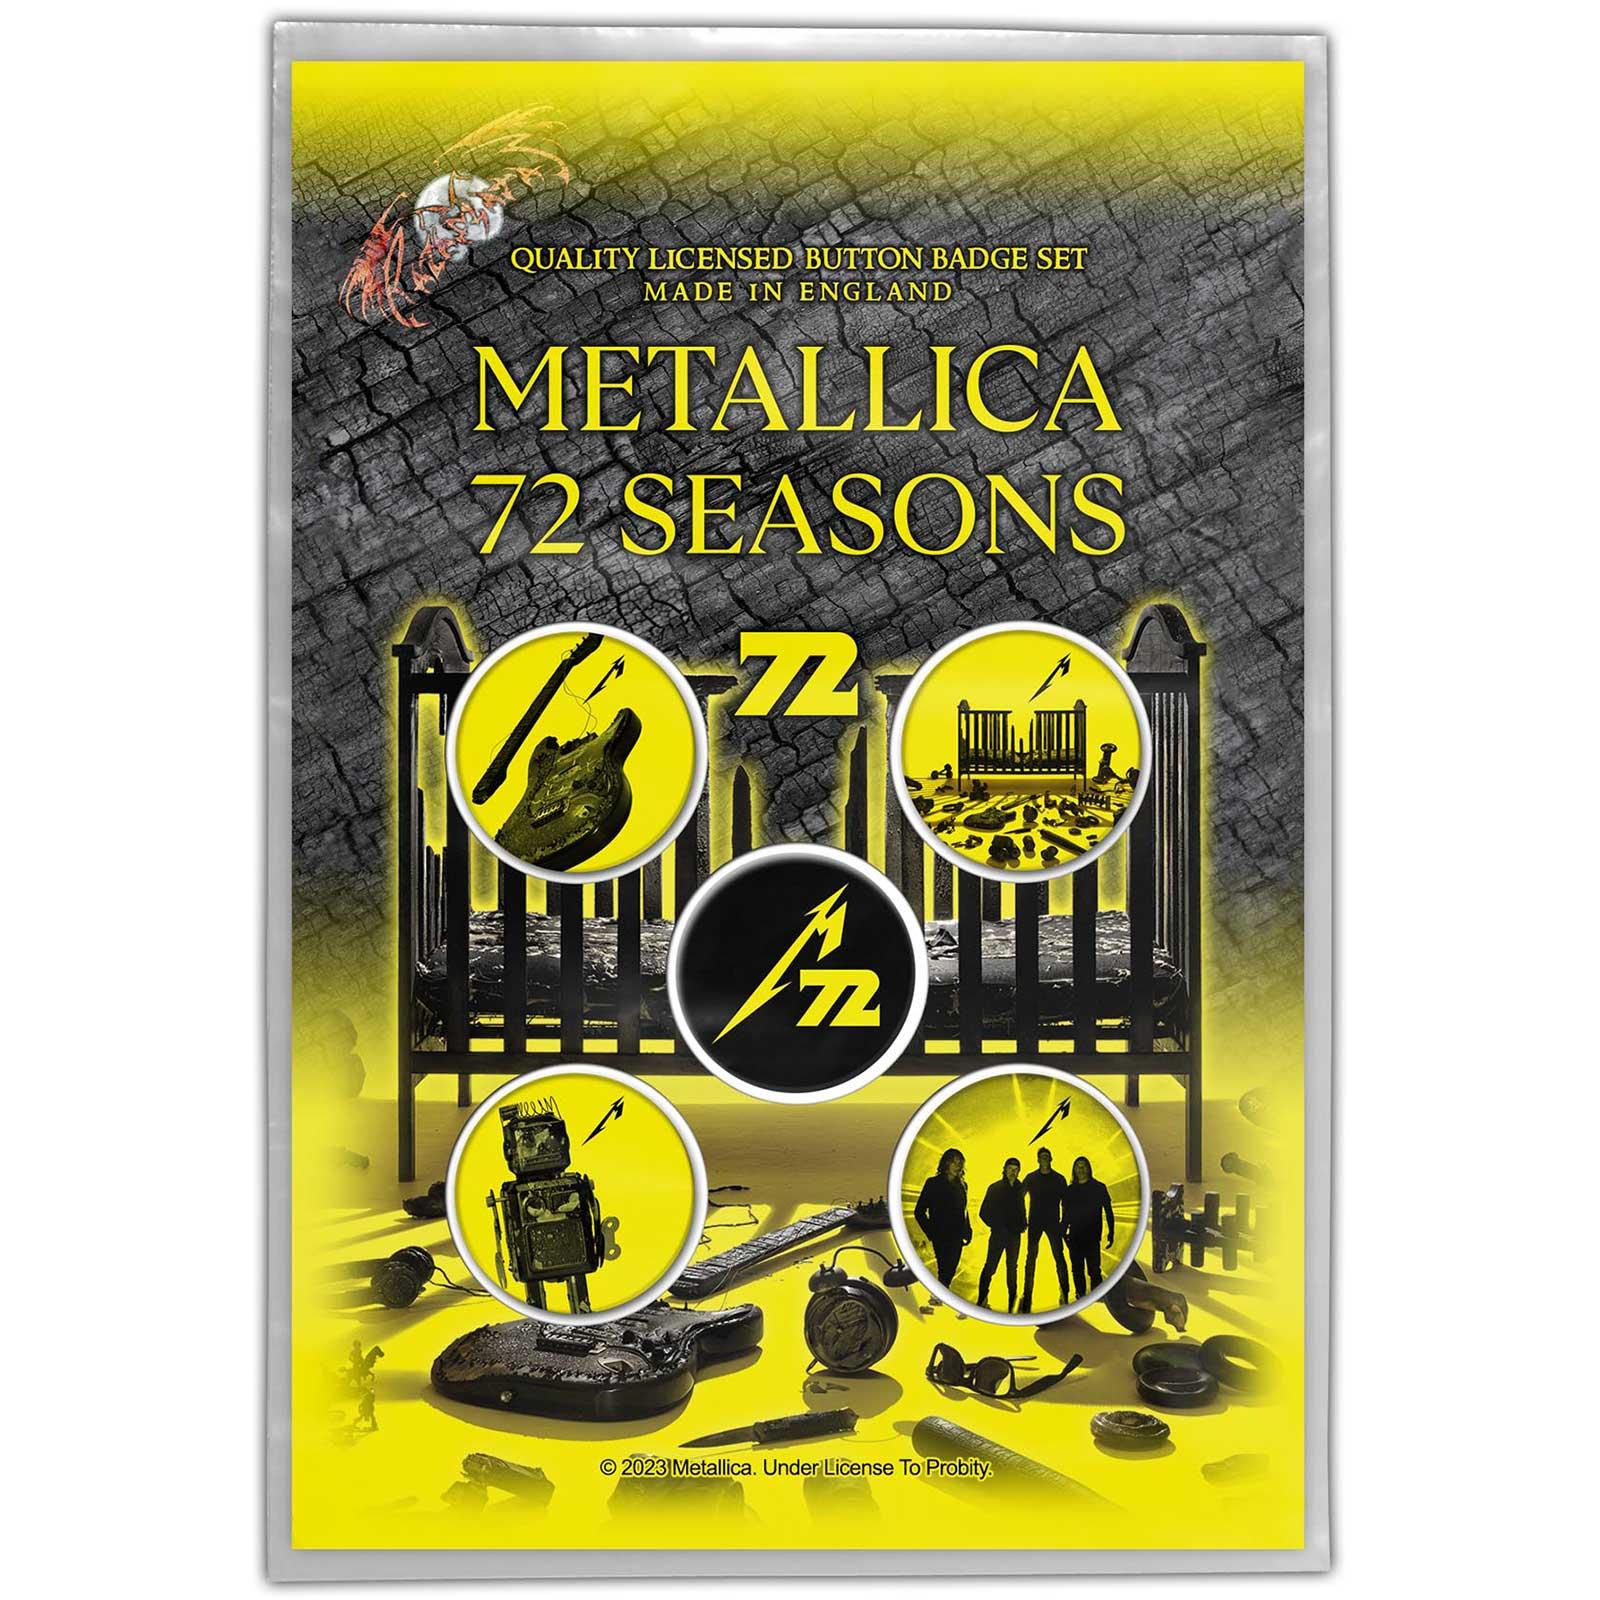 (メタリカ) Metallica オフィシャル商品 72 Seasons バッジ セット (5個組) 【海外通販】